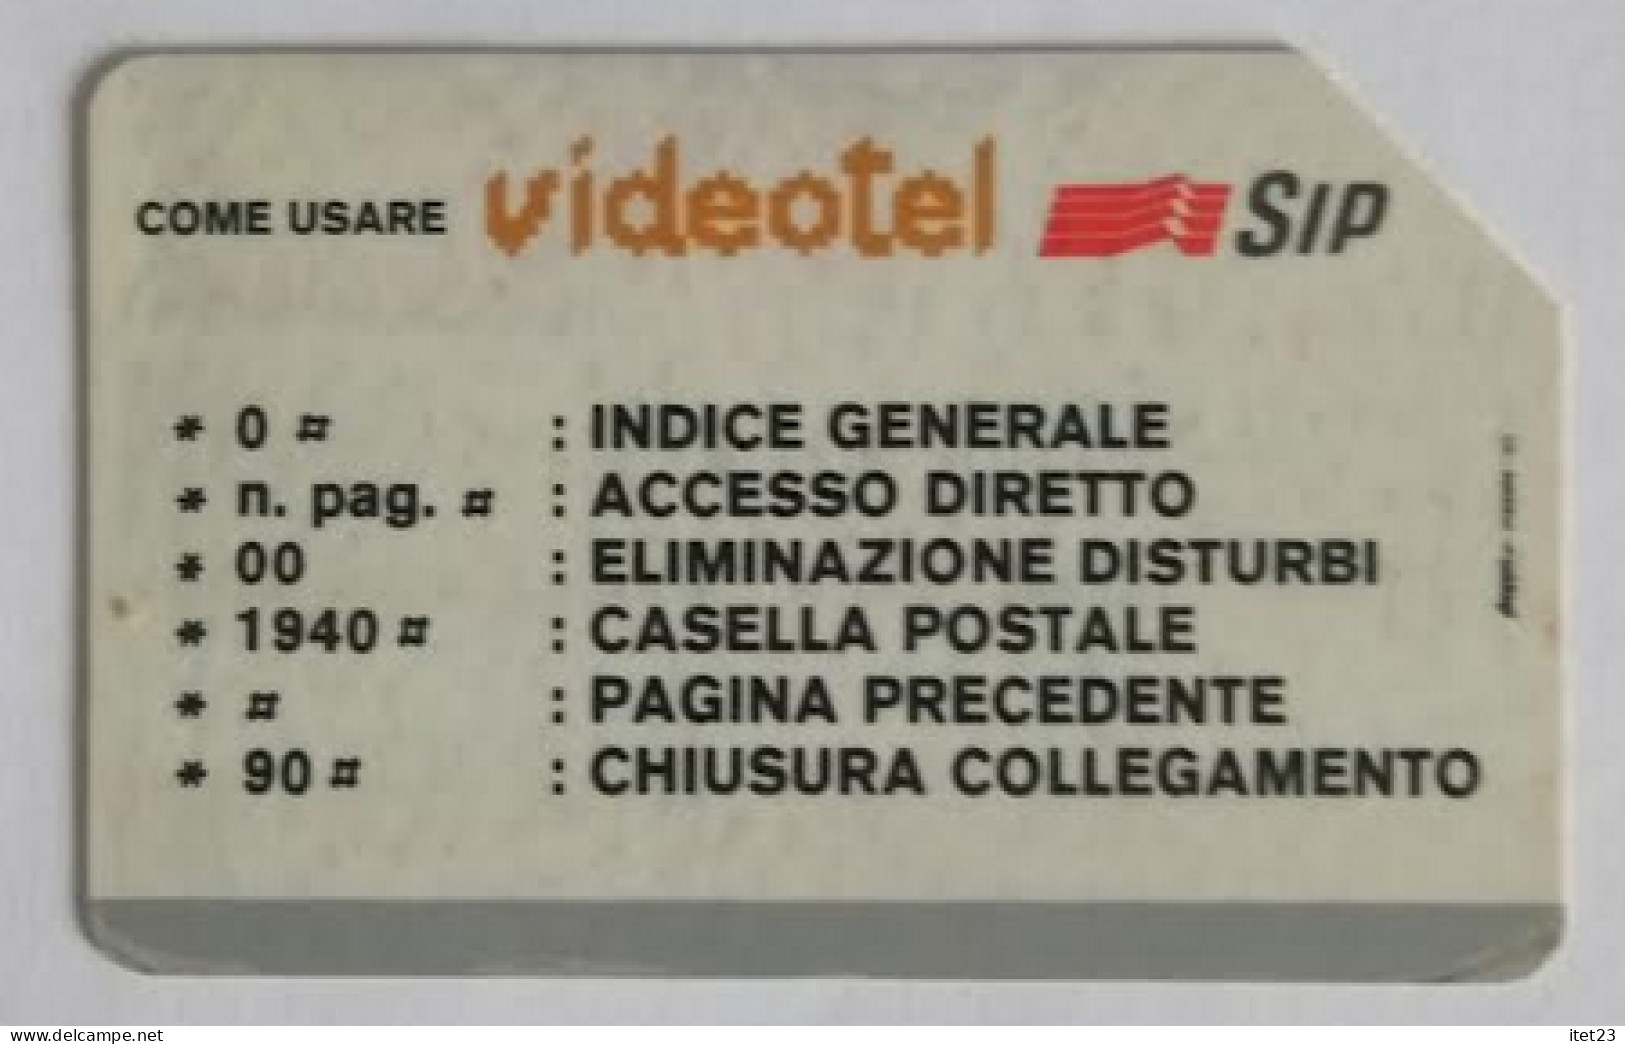 SCHEDA TELEFONICA ITALIANA - USI SPECIALI  VIDEOTEL SIP- C&C 4009 - Verzamelingen